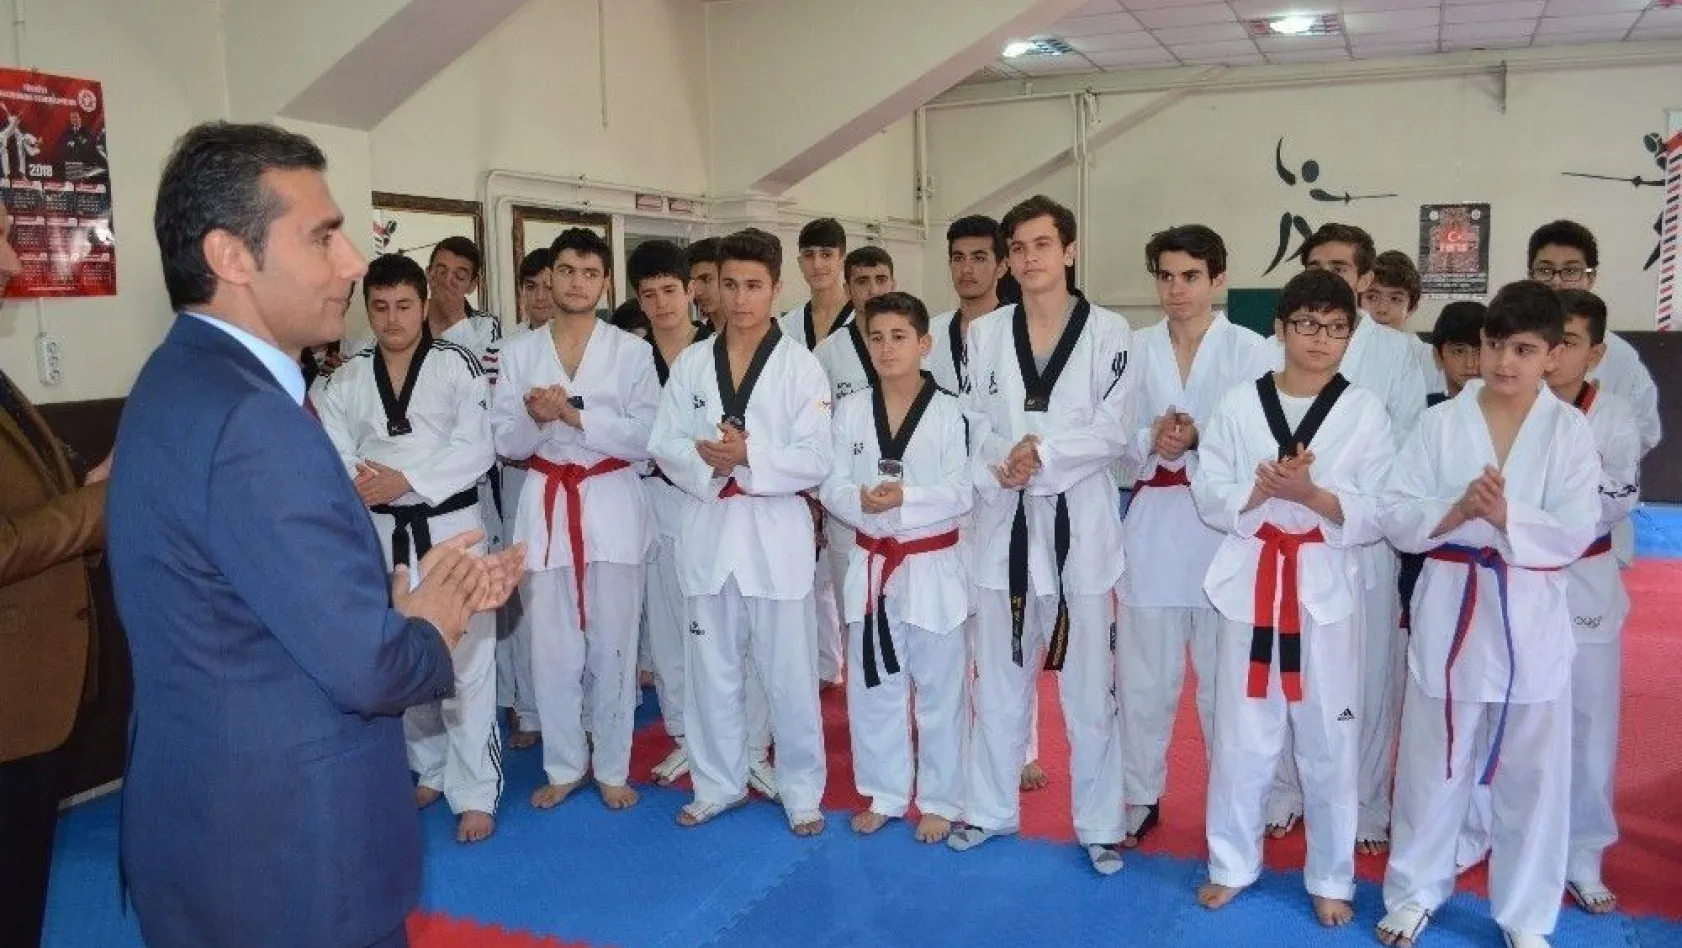 Adışaman'da Taekwondo İl Birinciliği müsabakaları sona erdi
